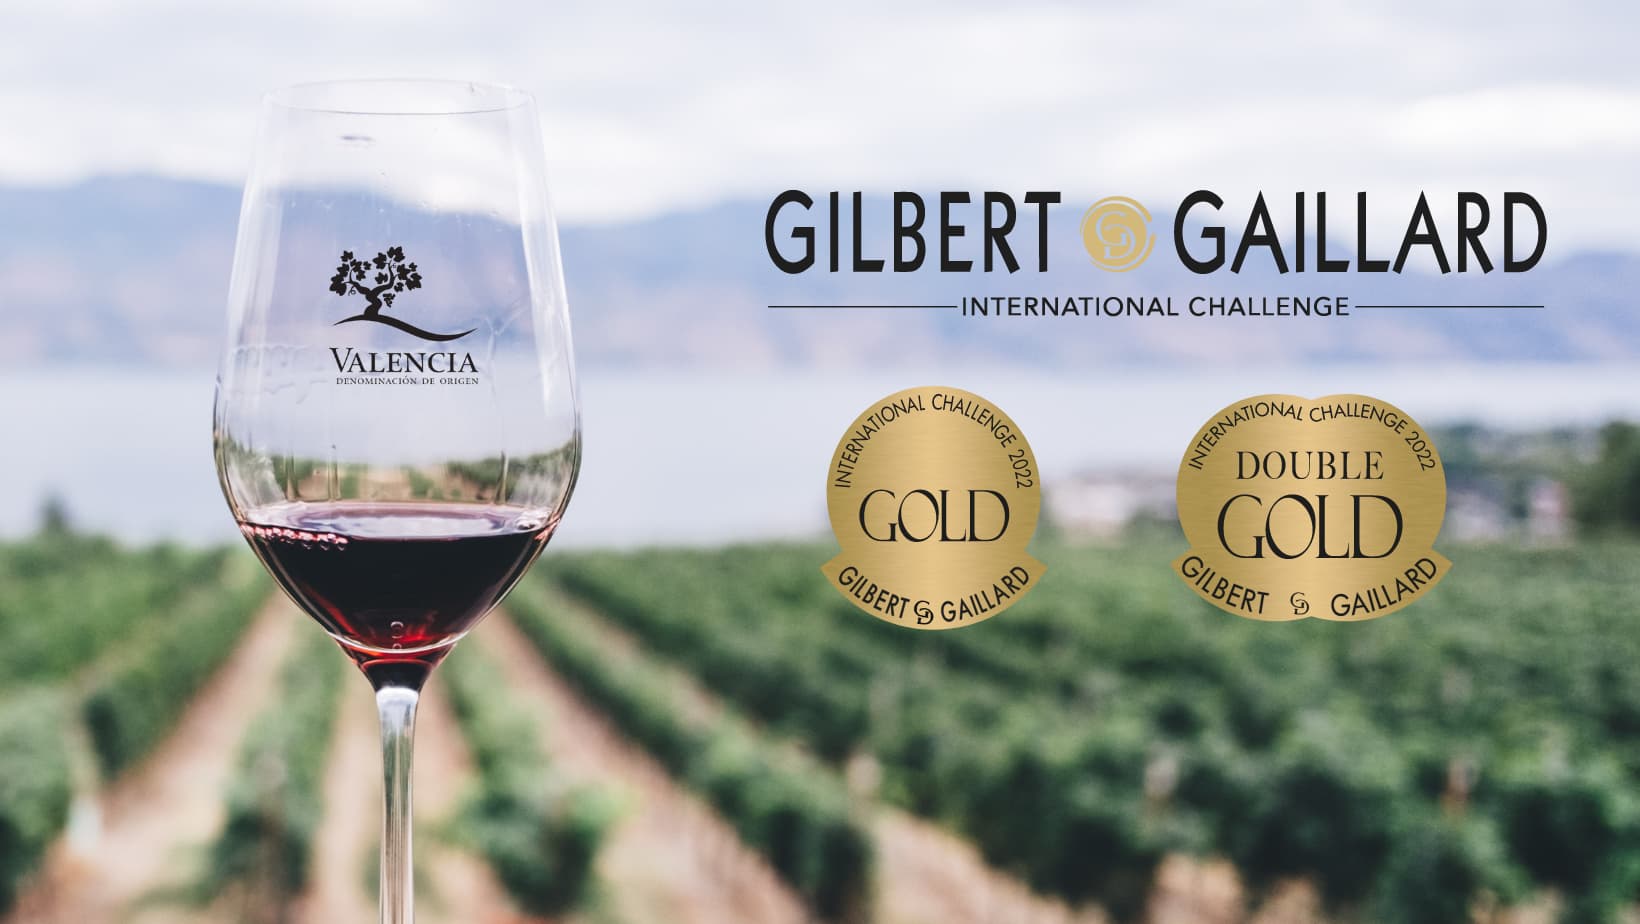 Concurso Internacional de Gilbert & Gaillard